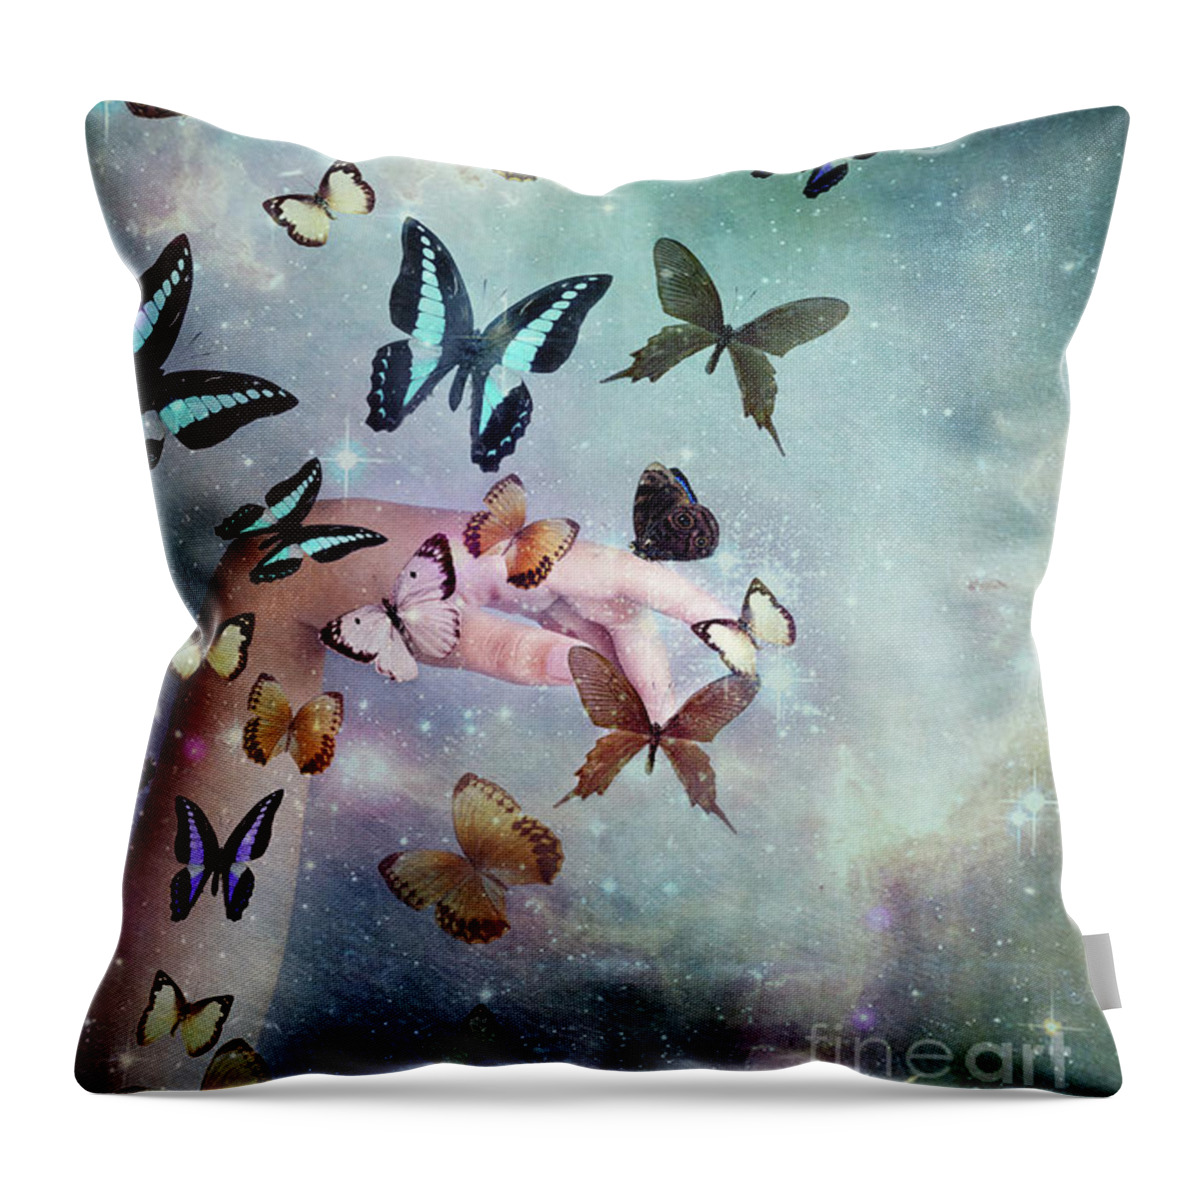 Butterfly Throw Pillow featuring the digital art Butterflies Reborn by Stephanie Frey